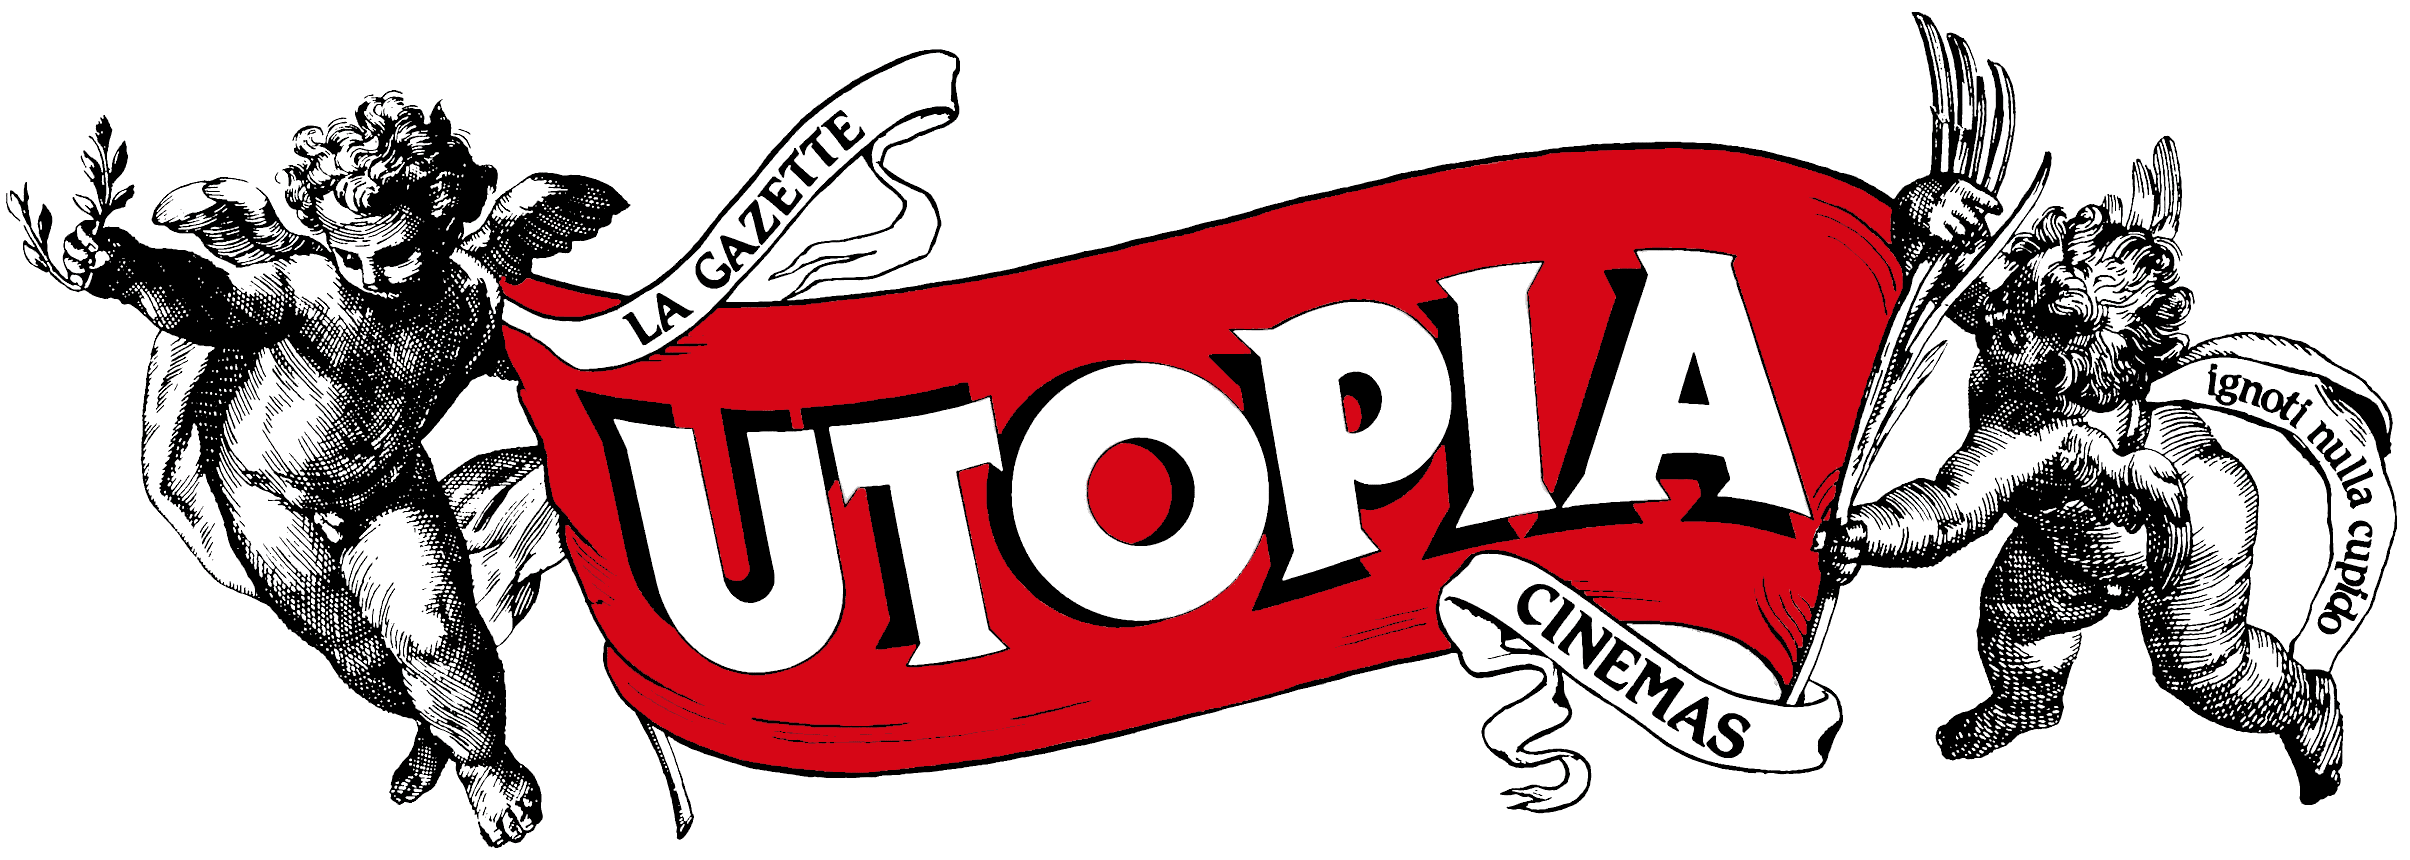 Cinema Utopia Toulouse